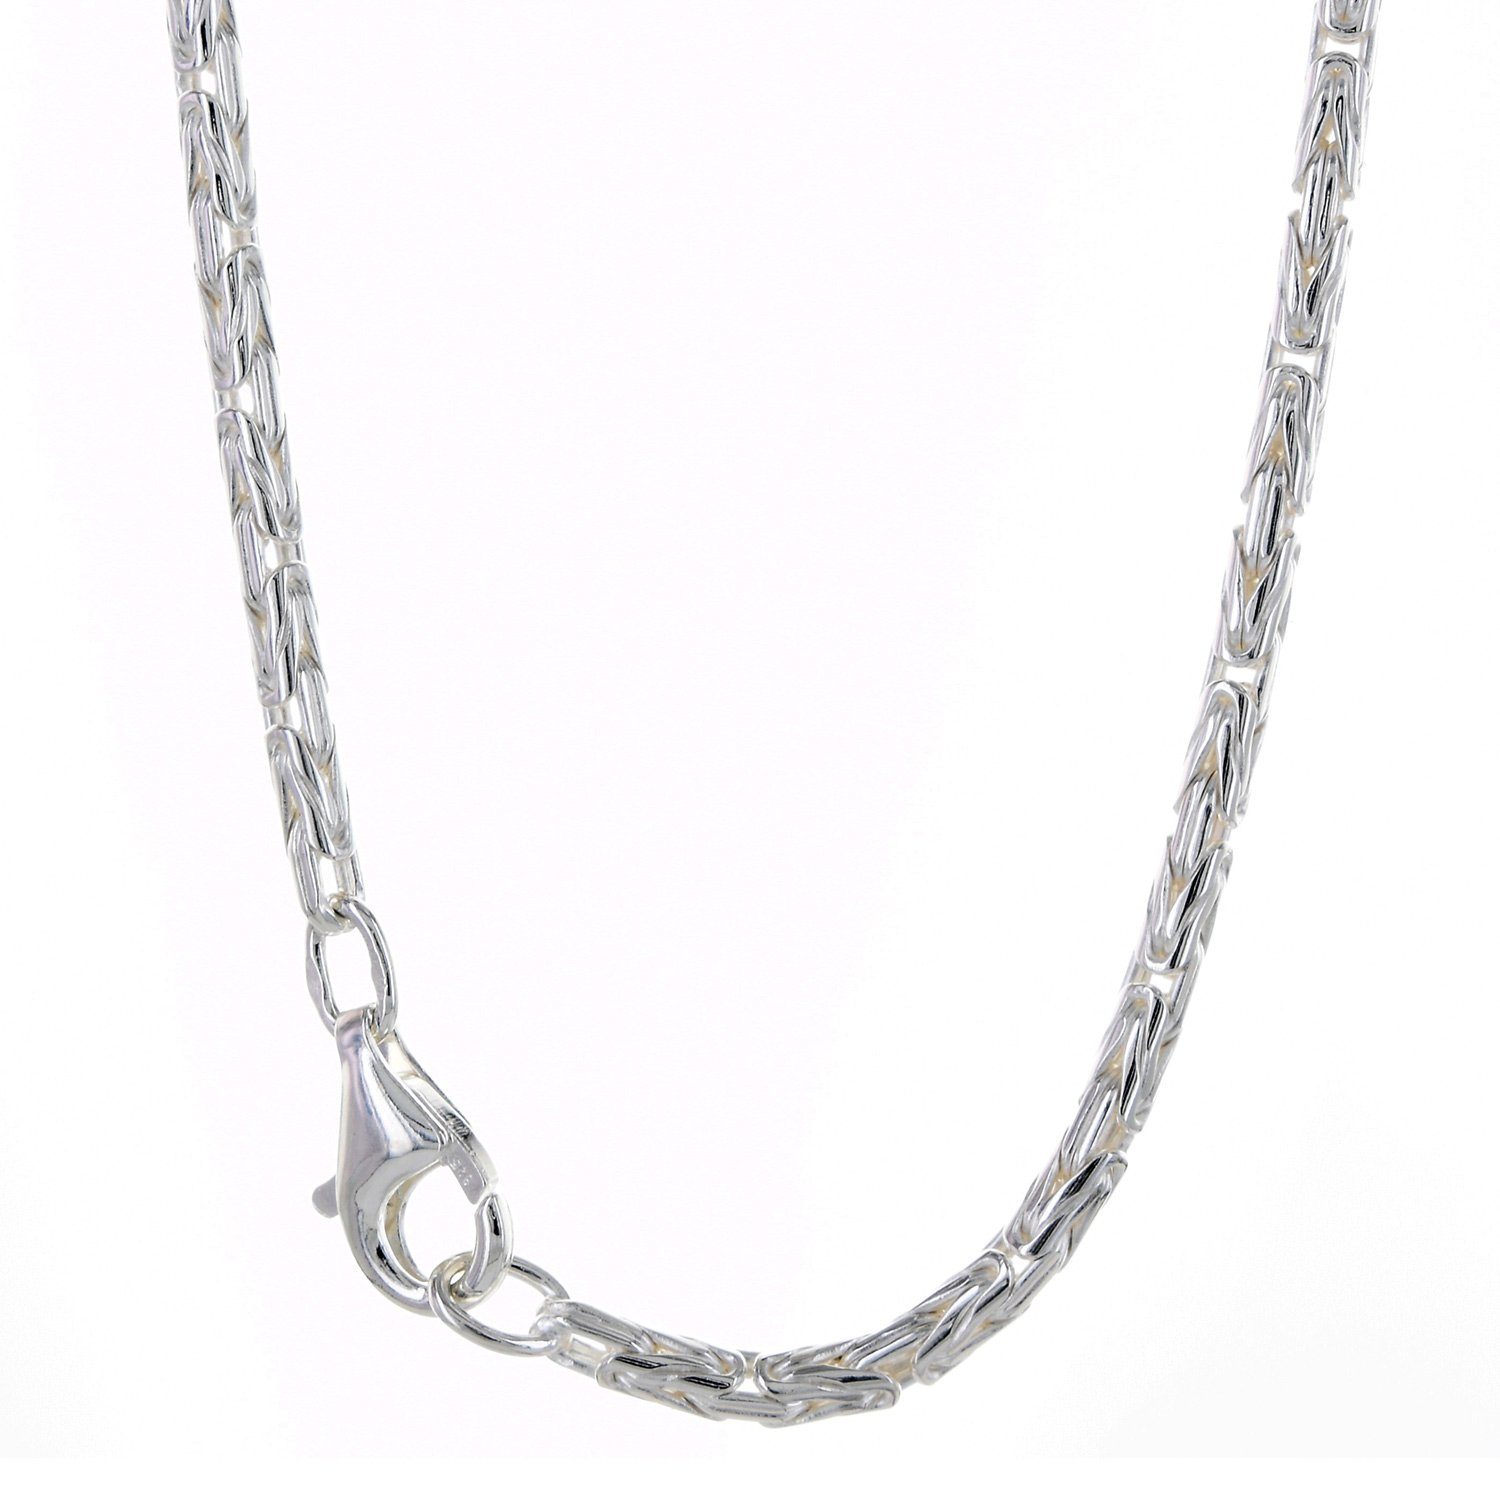 HOPLO Königskette Silberkette Königskette Länge 21cm - Breite 2,3mm - 925 Silber, Made in Germany